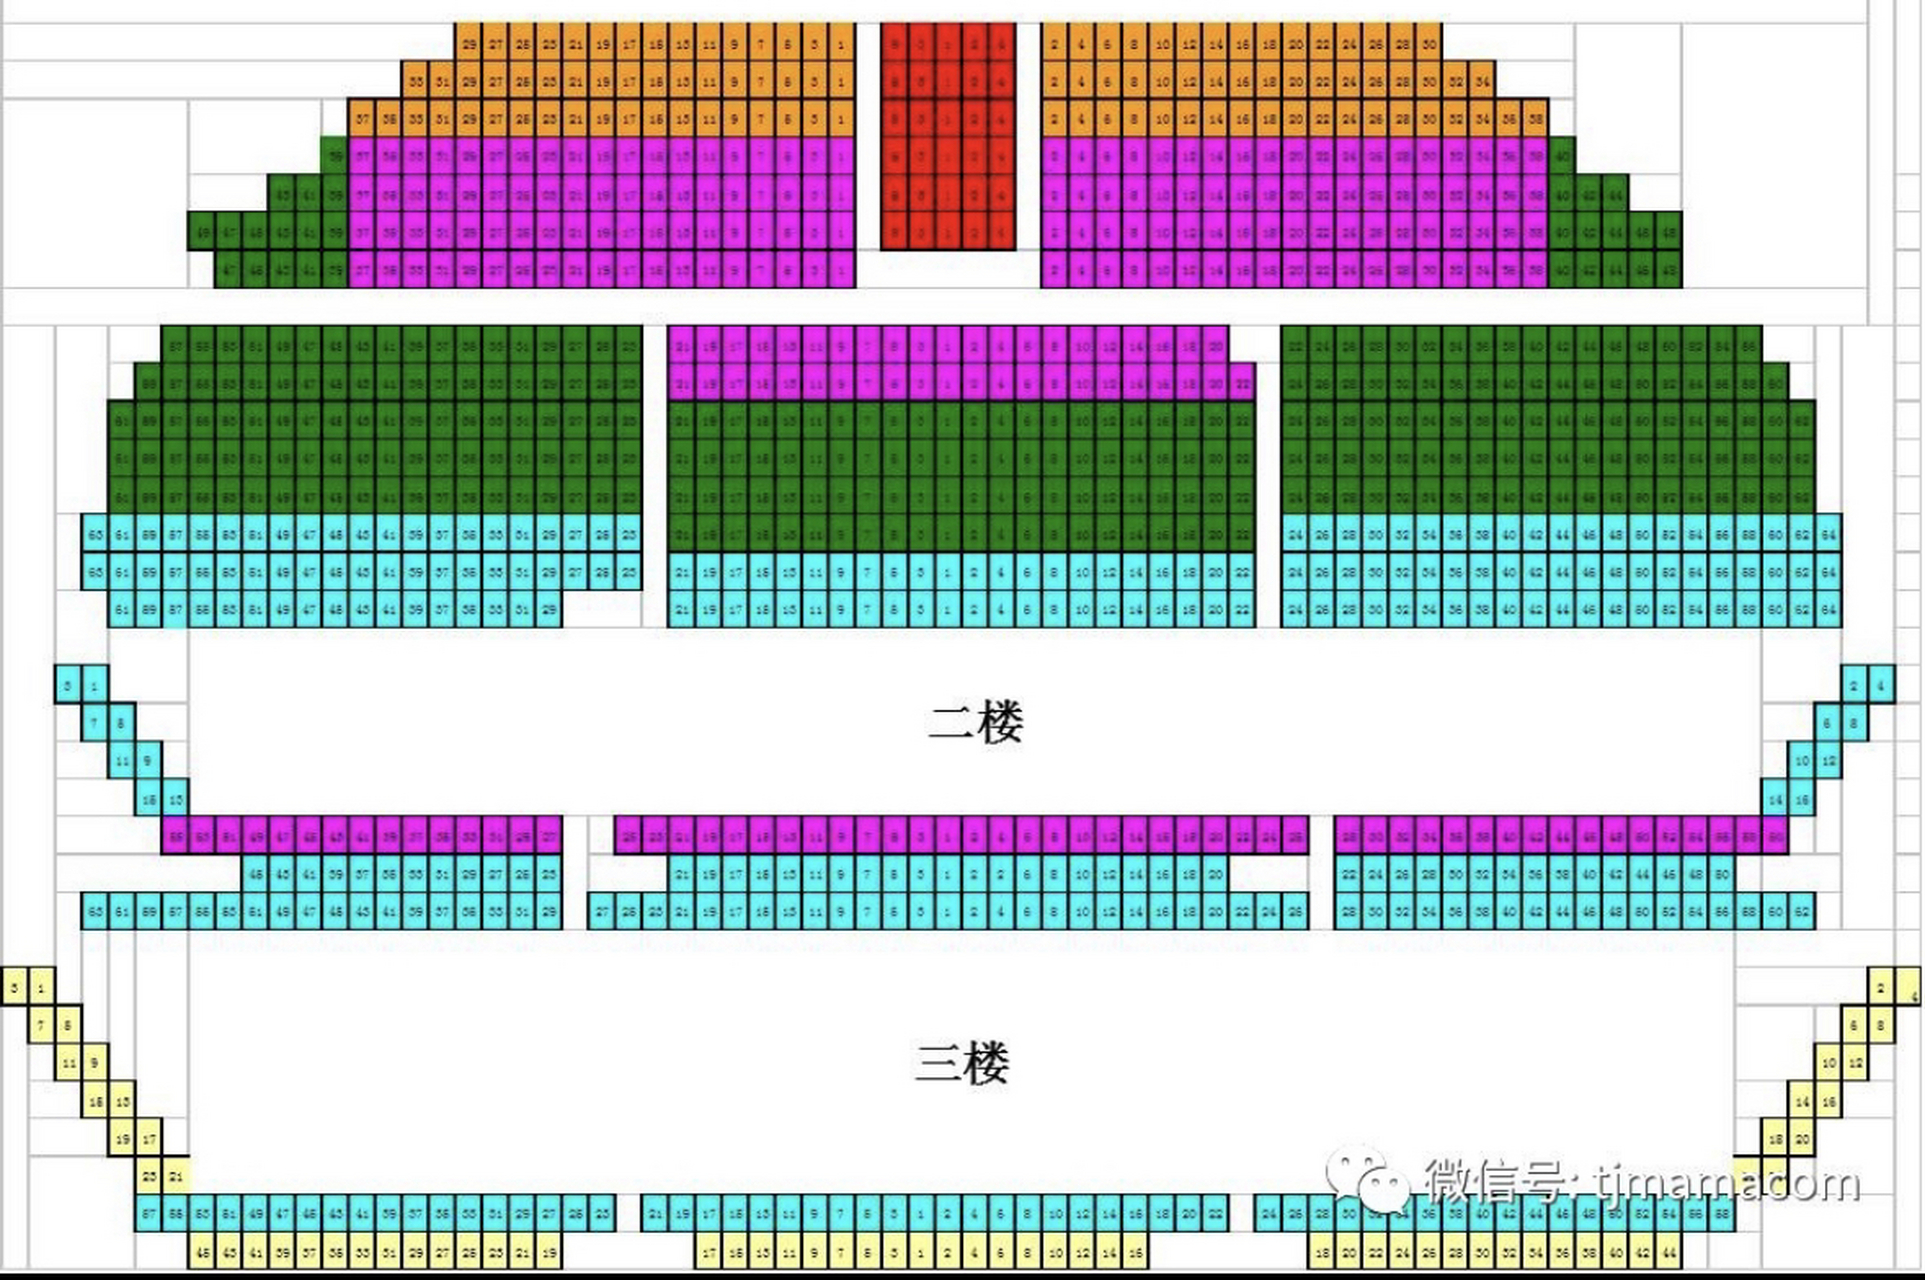 天津部分剧场座位详解 最近各大剧院都已经恢复了正常,好多好看的话剧